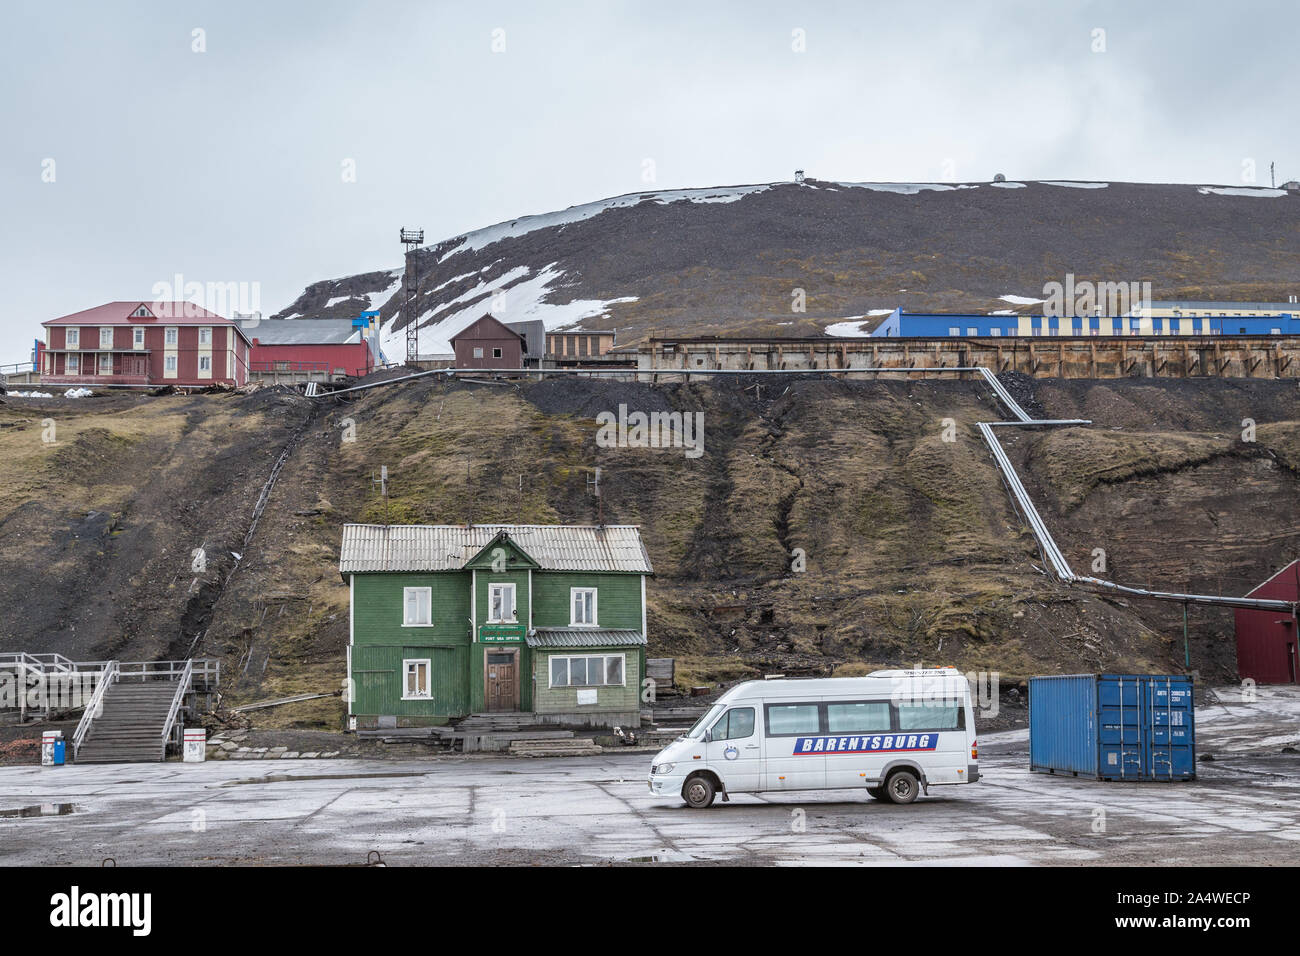 Port mer bureau du port dans les mines de charbon russe Barentsburg règlement à Svalbard, Spitzberg, la Norvège dans l'Arctique Banque D'Images